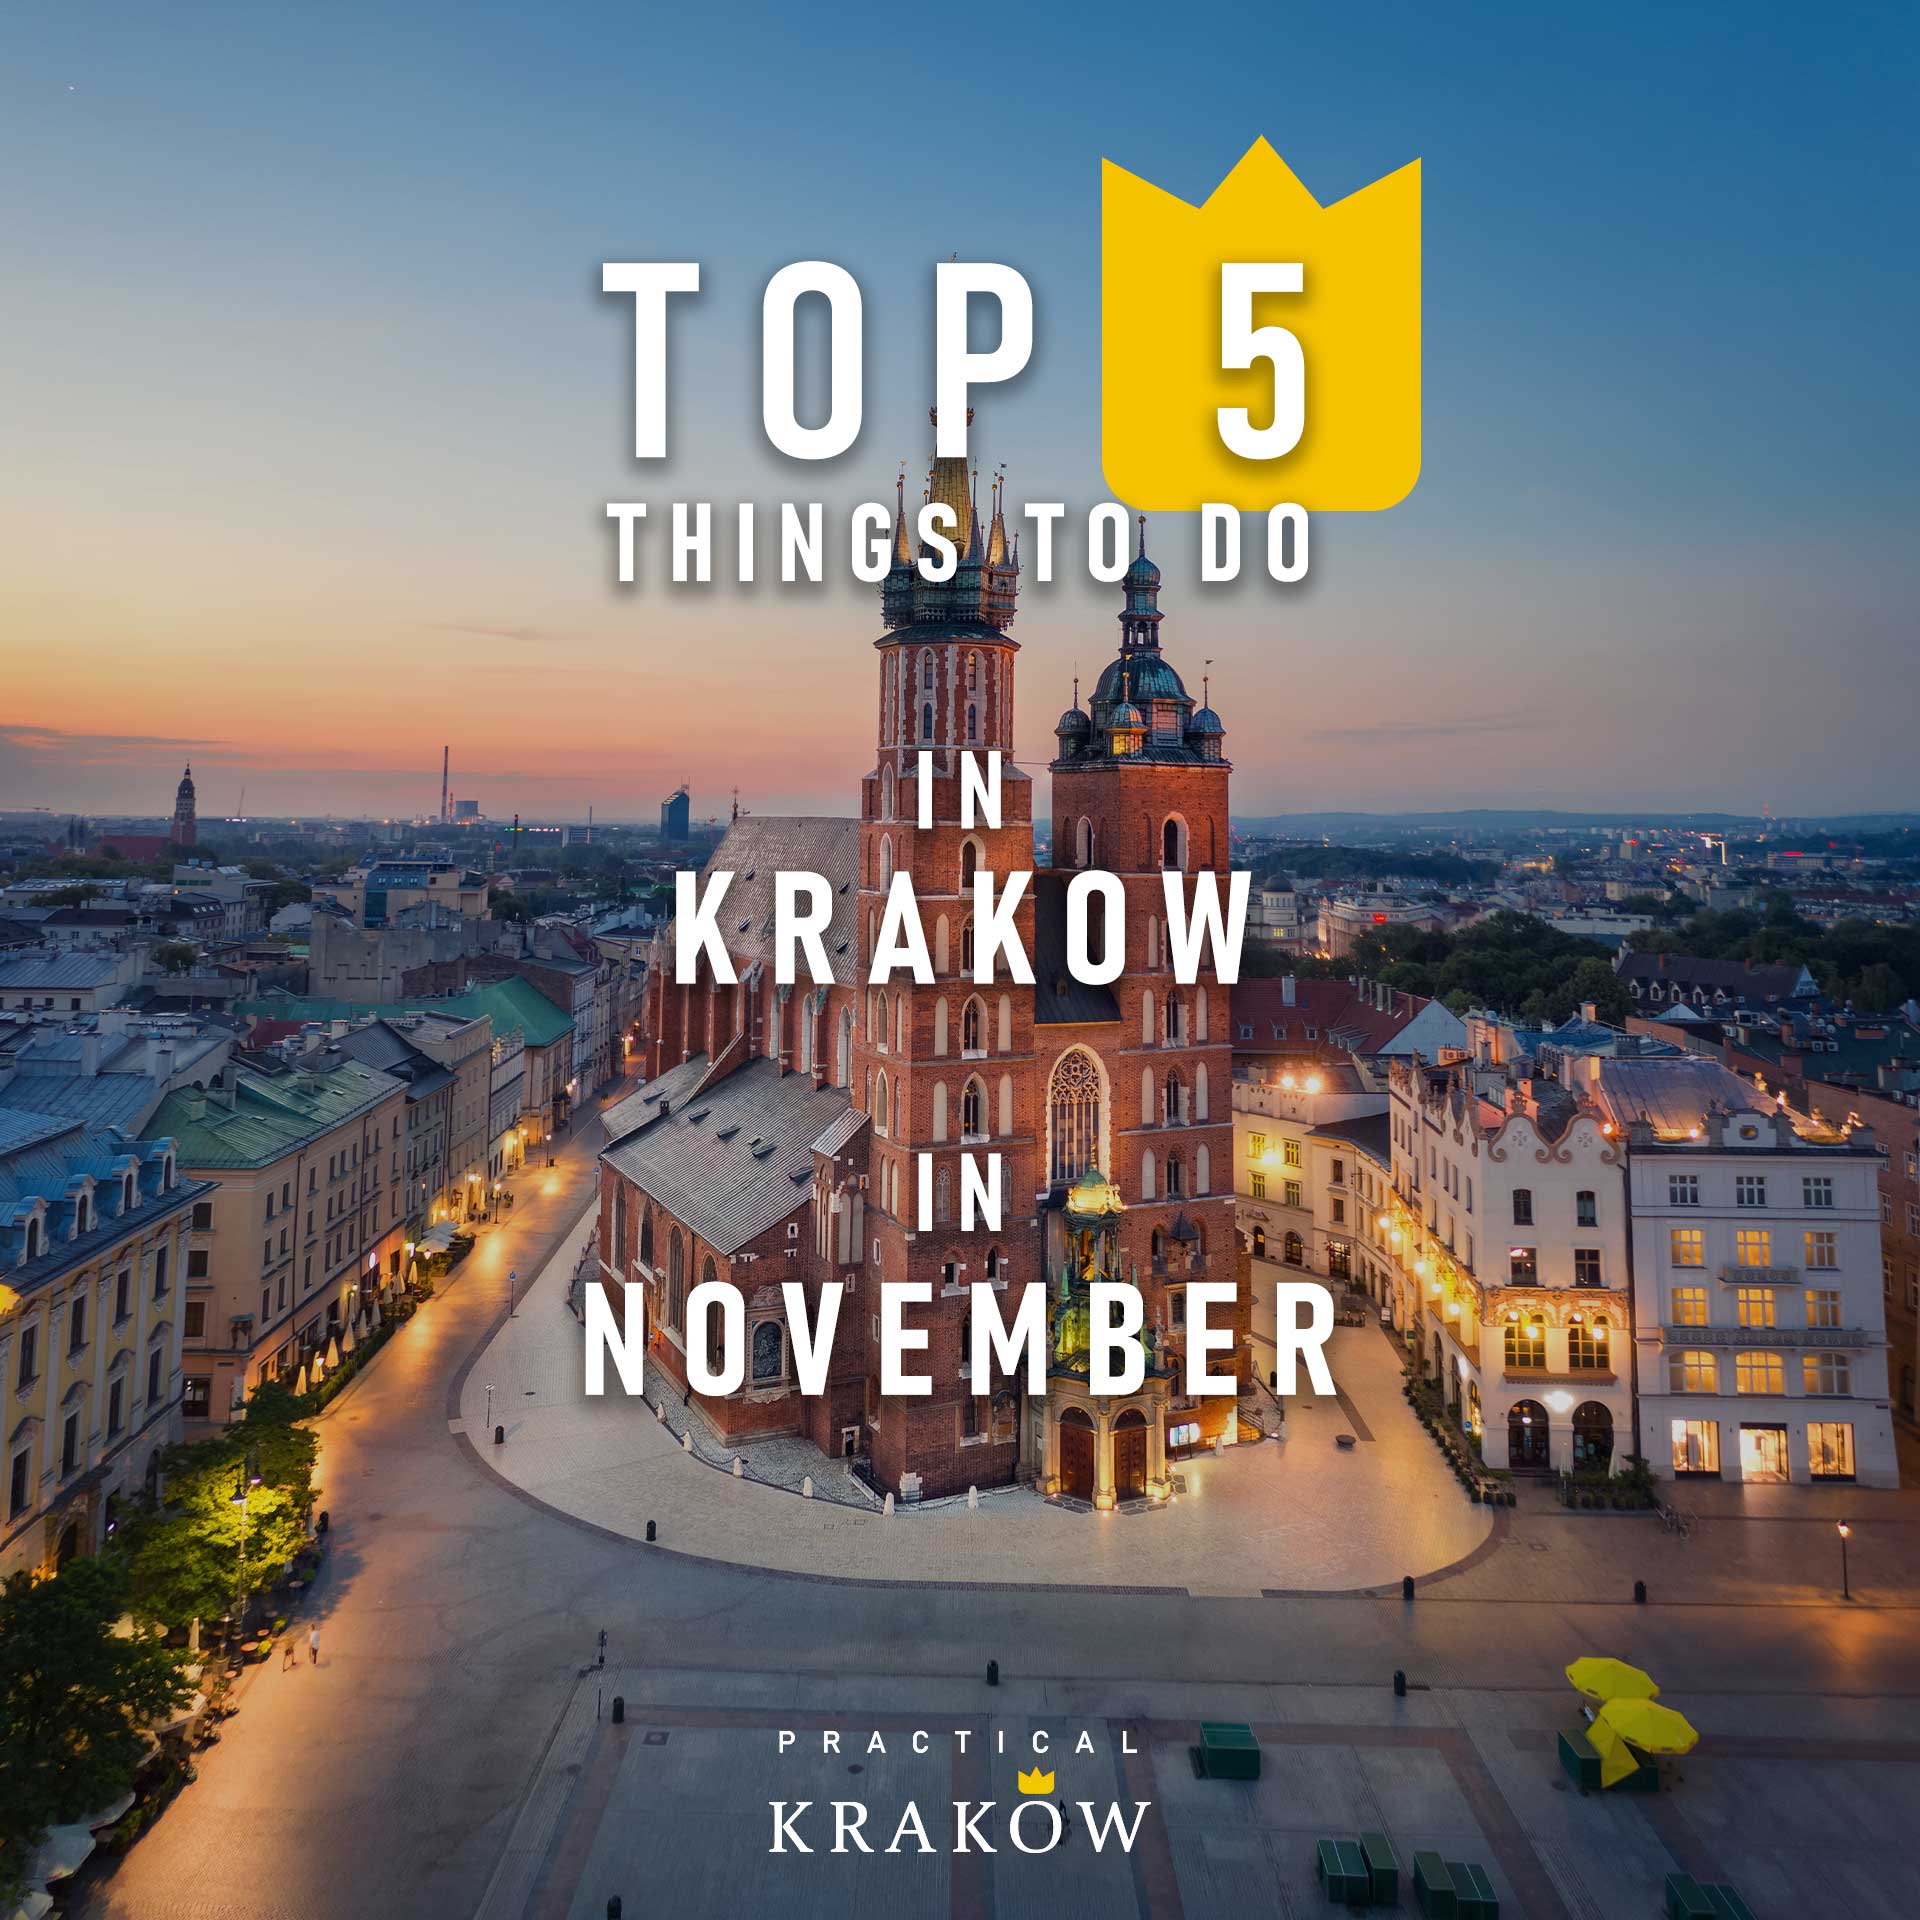 visit krakow in november